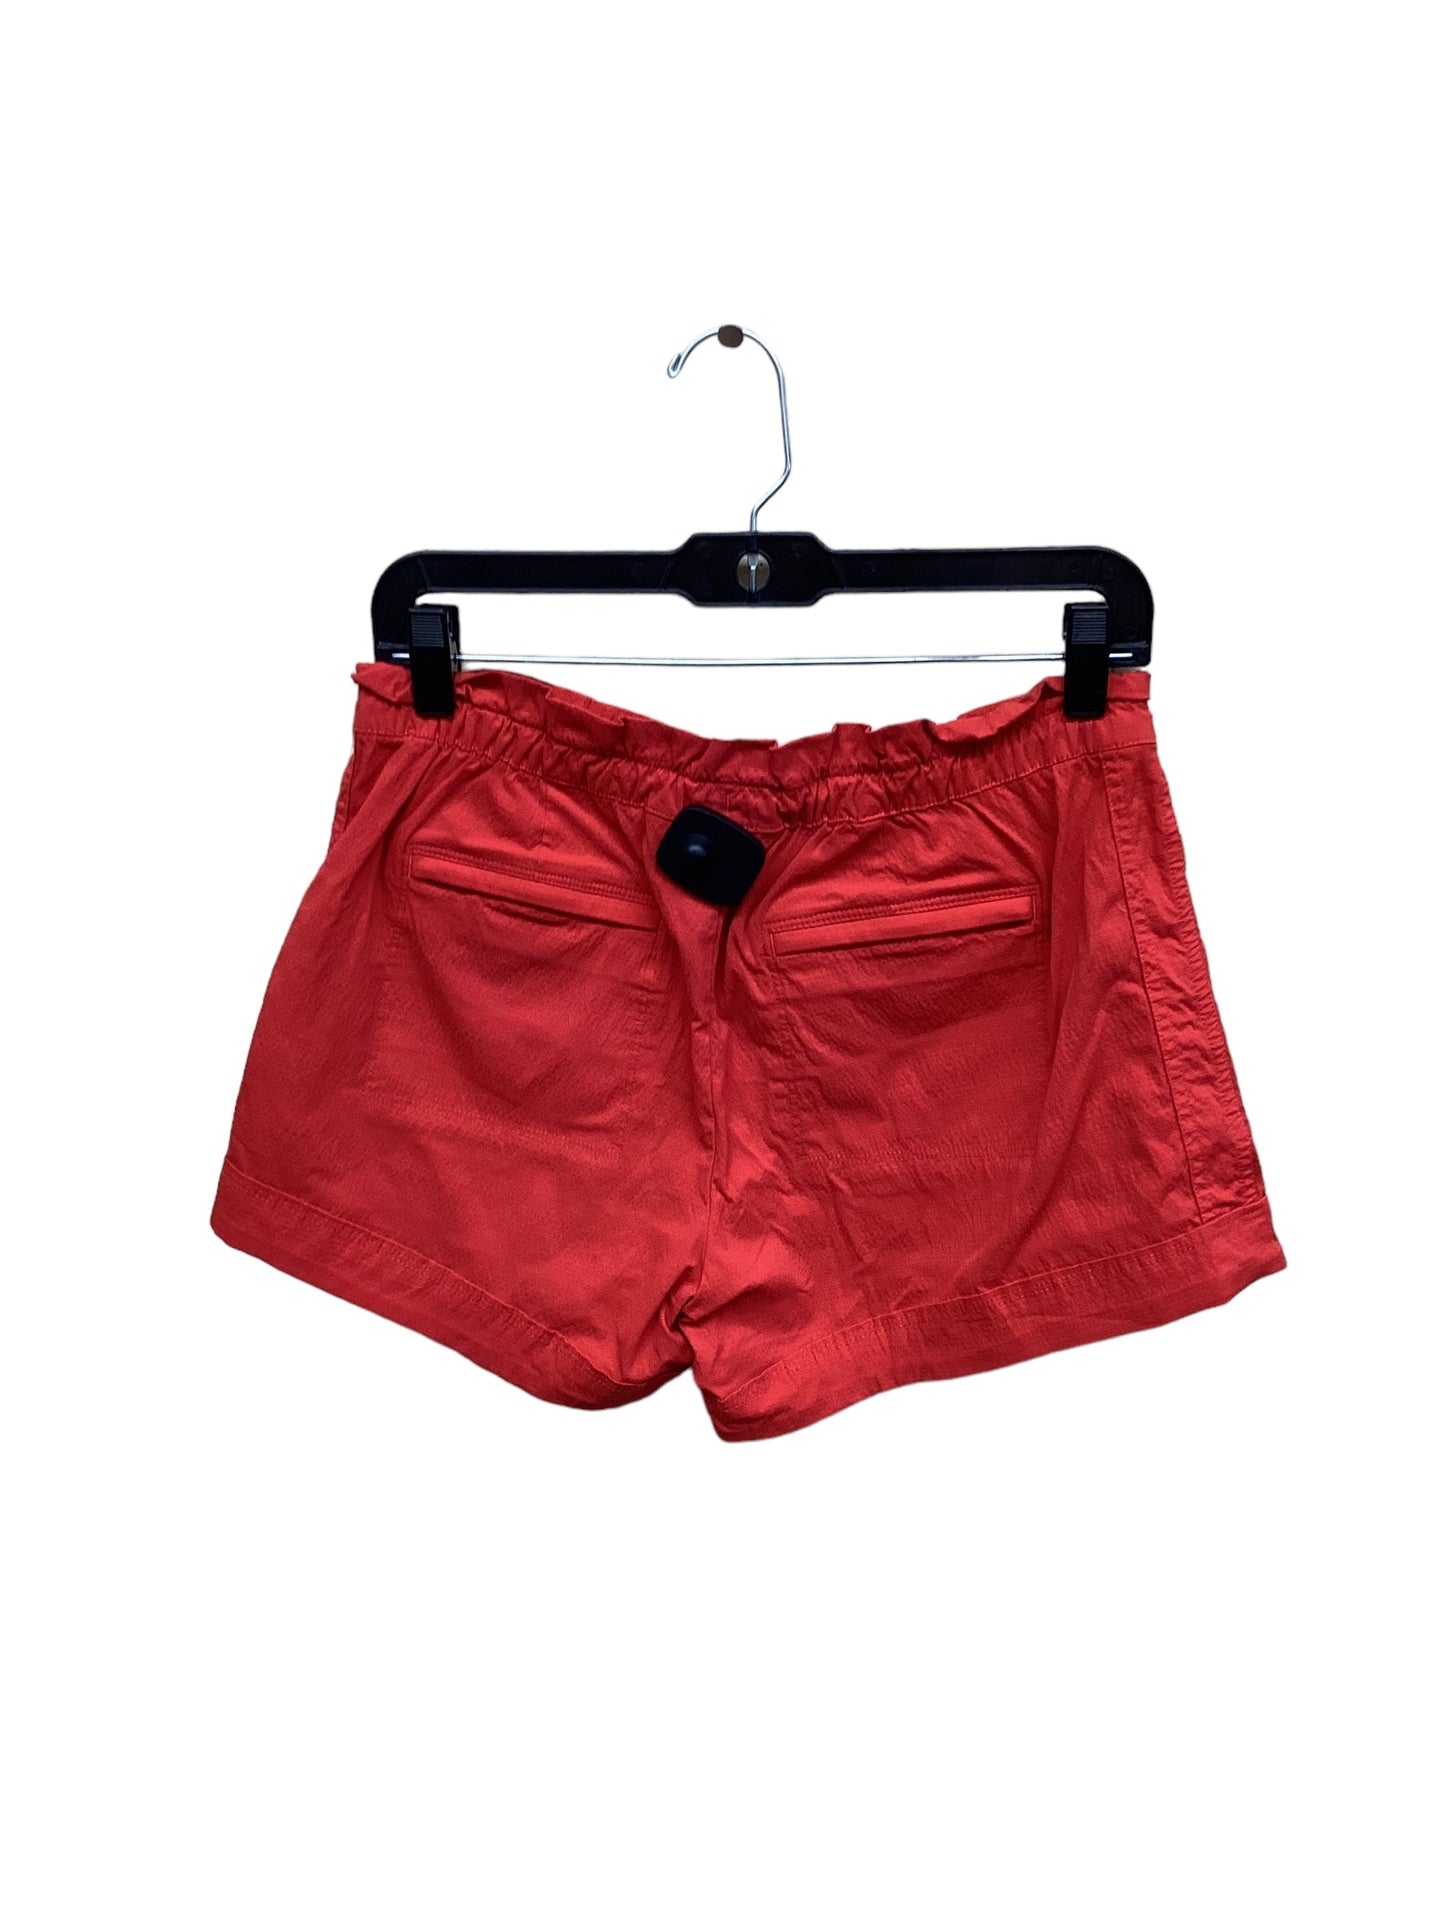 Red Athletic Shorts Athleta, Size 4